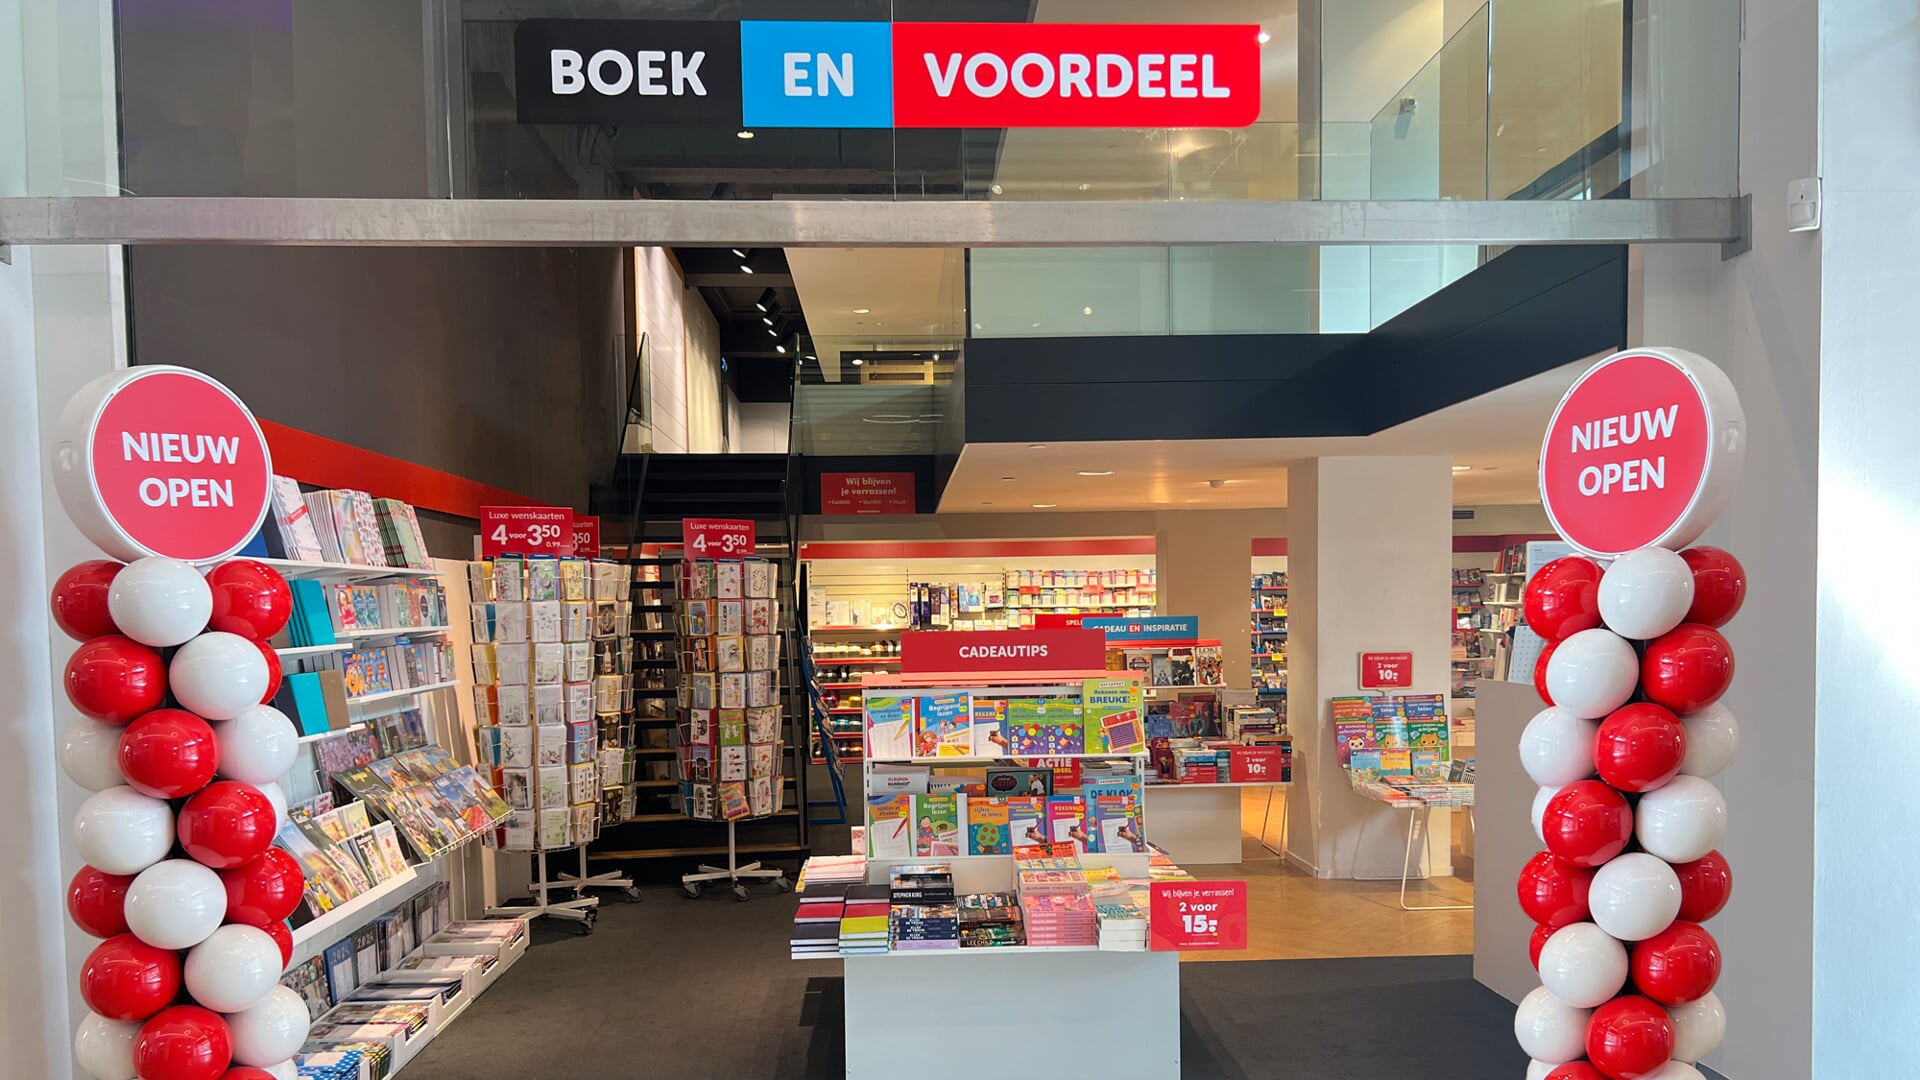 BoekenVoordeel in Stadshart Amstelveen.